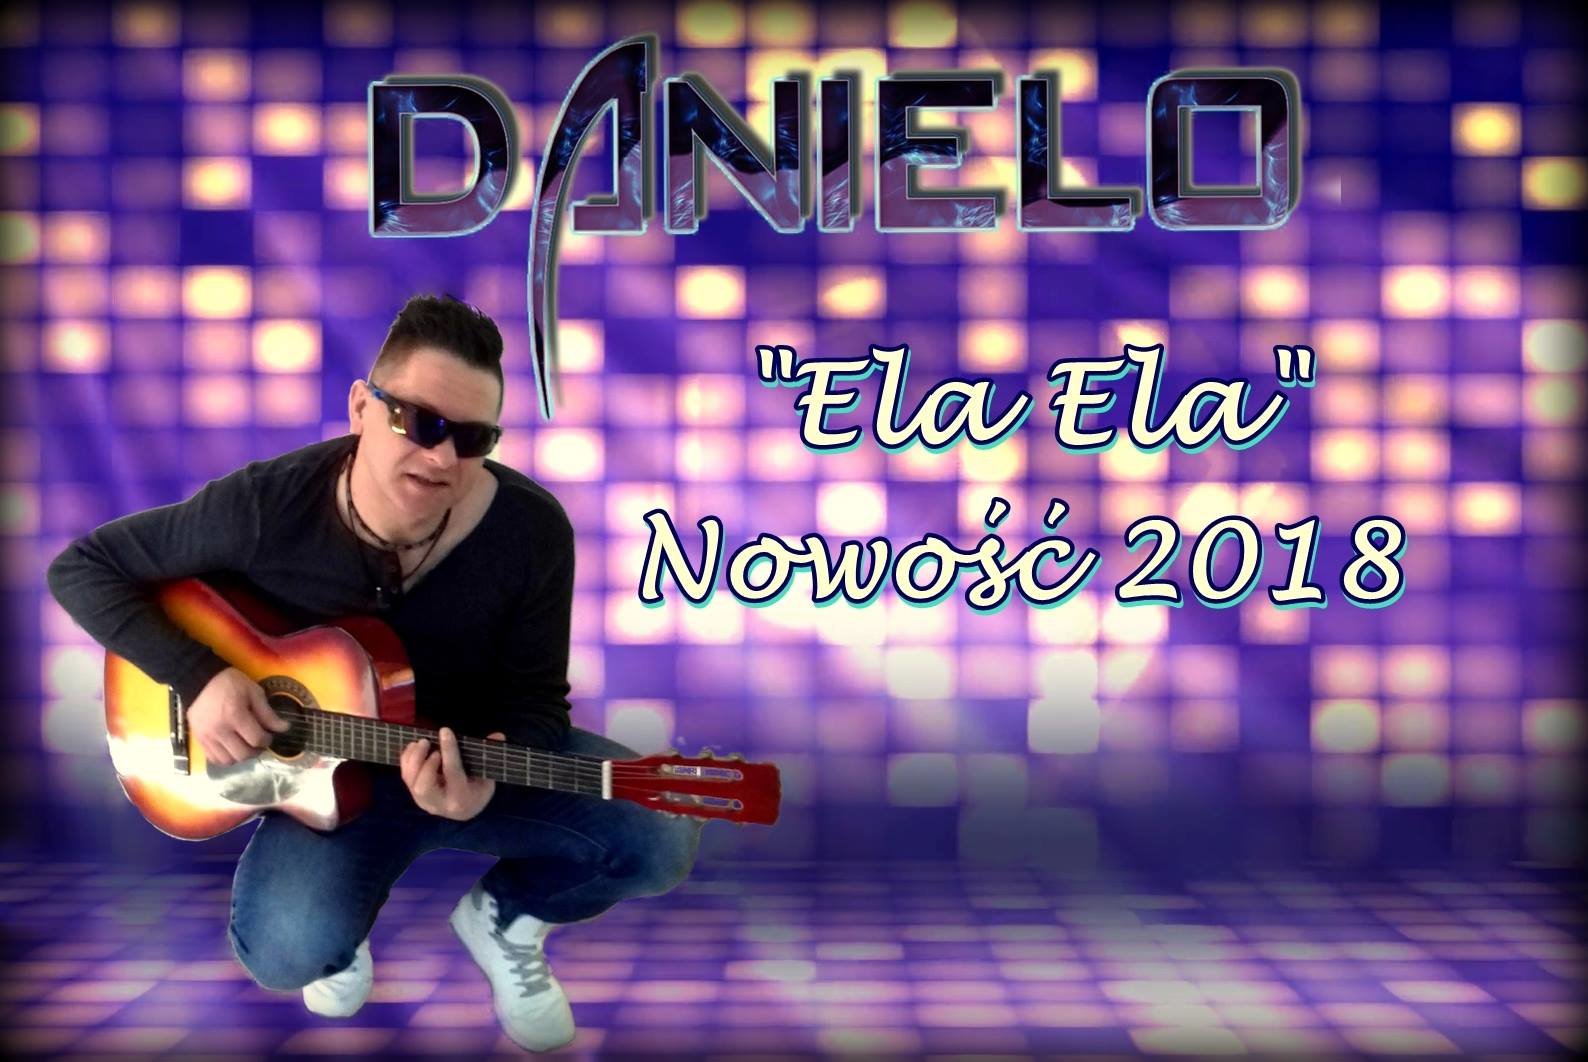 Ela Ela - nowy singiel formacji Danielo | PREMIERA 